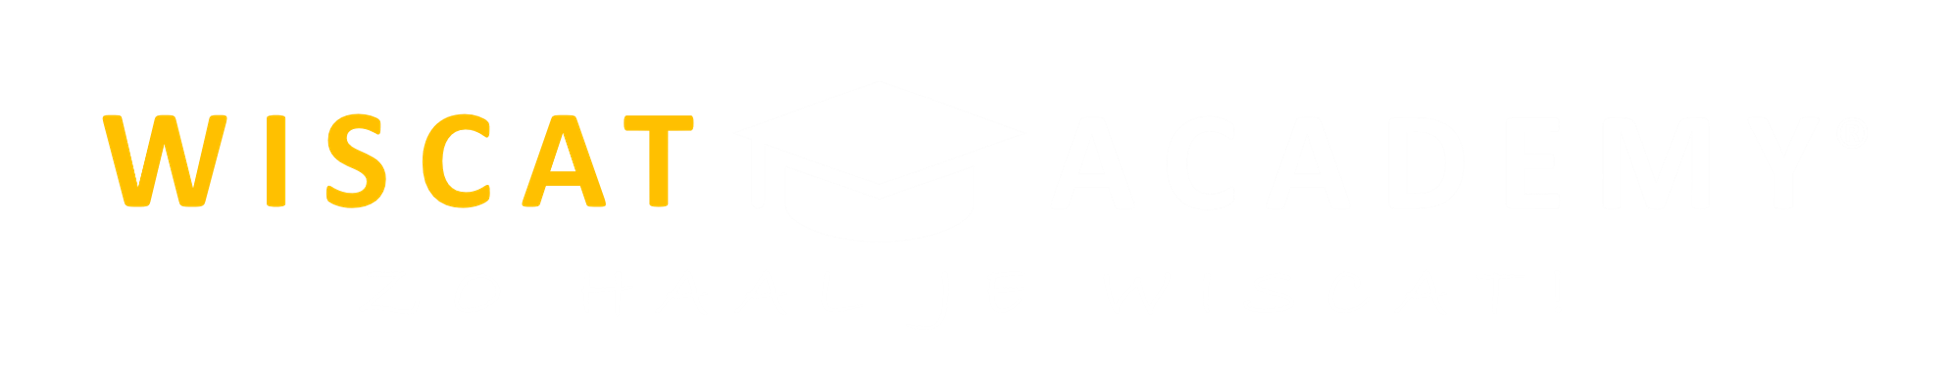 logo-wiscat-academy